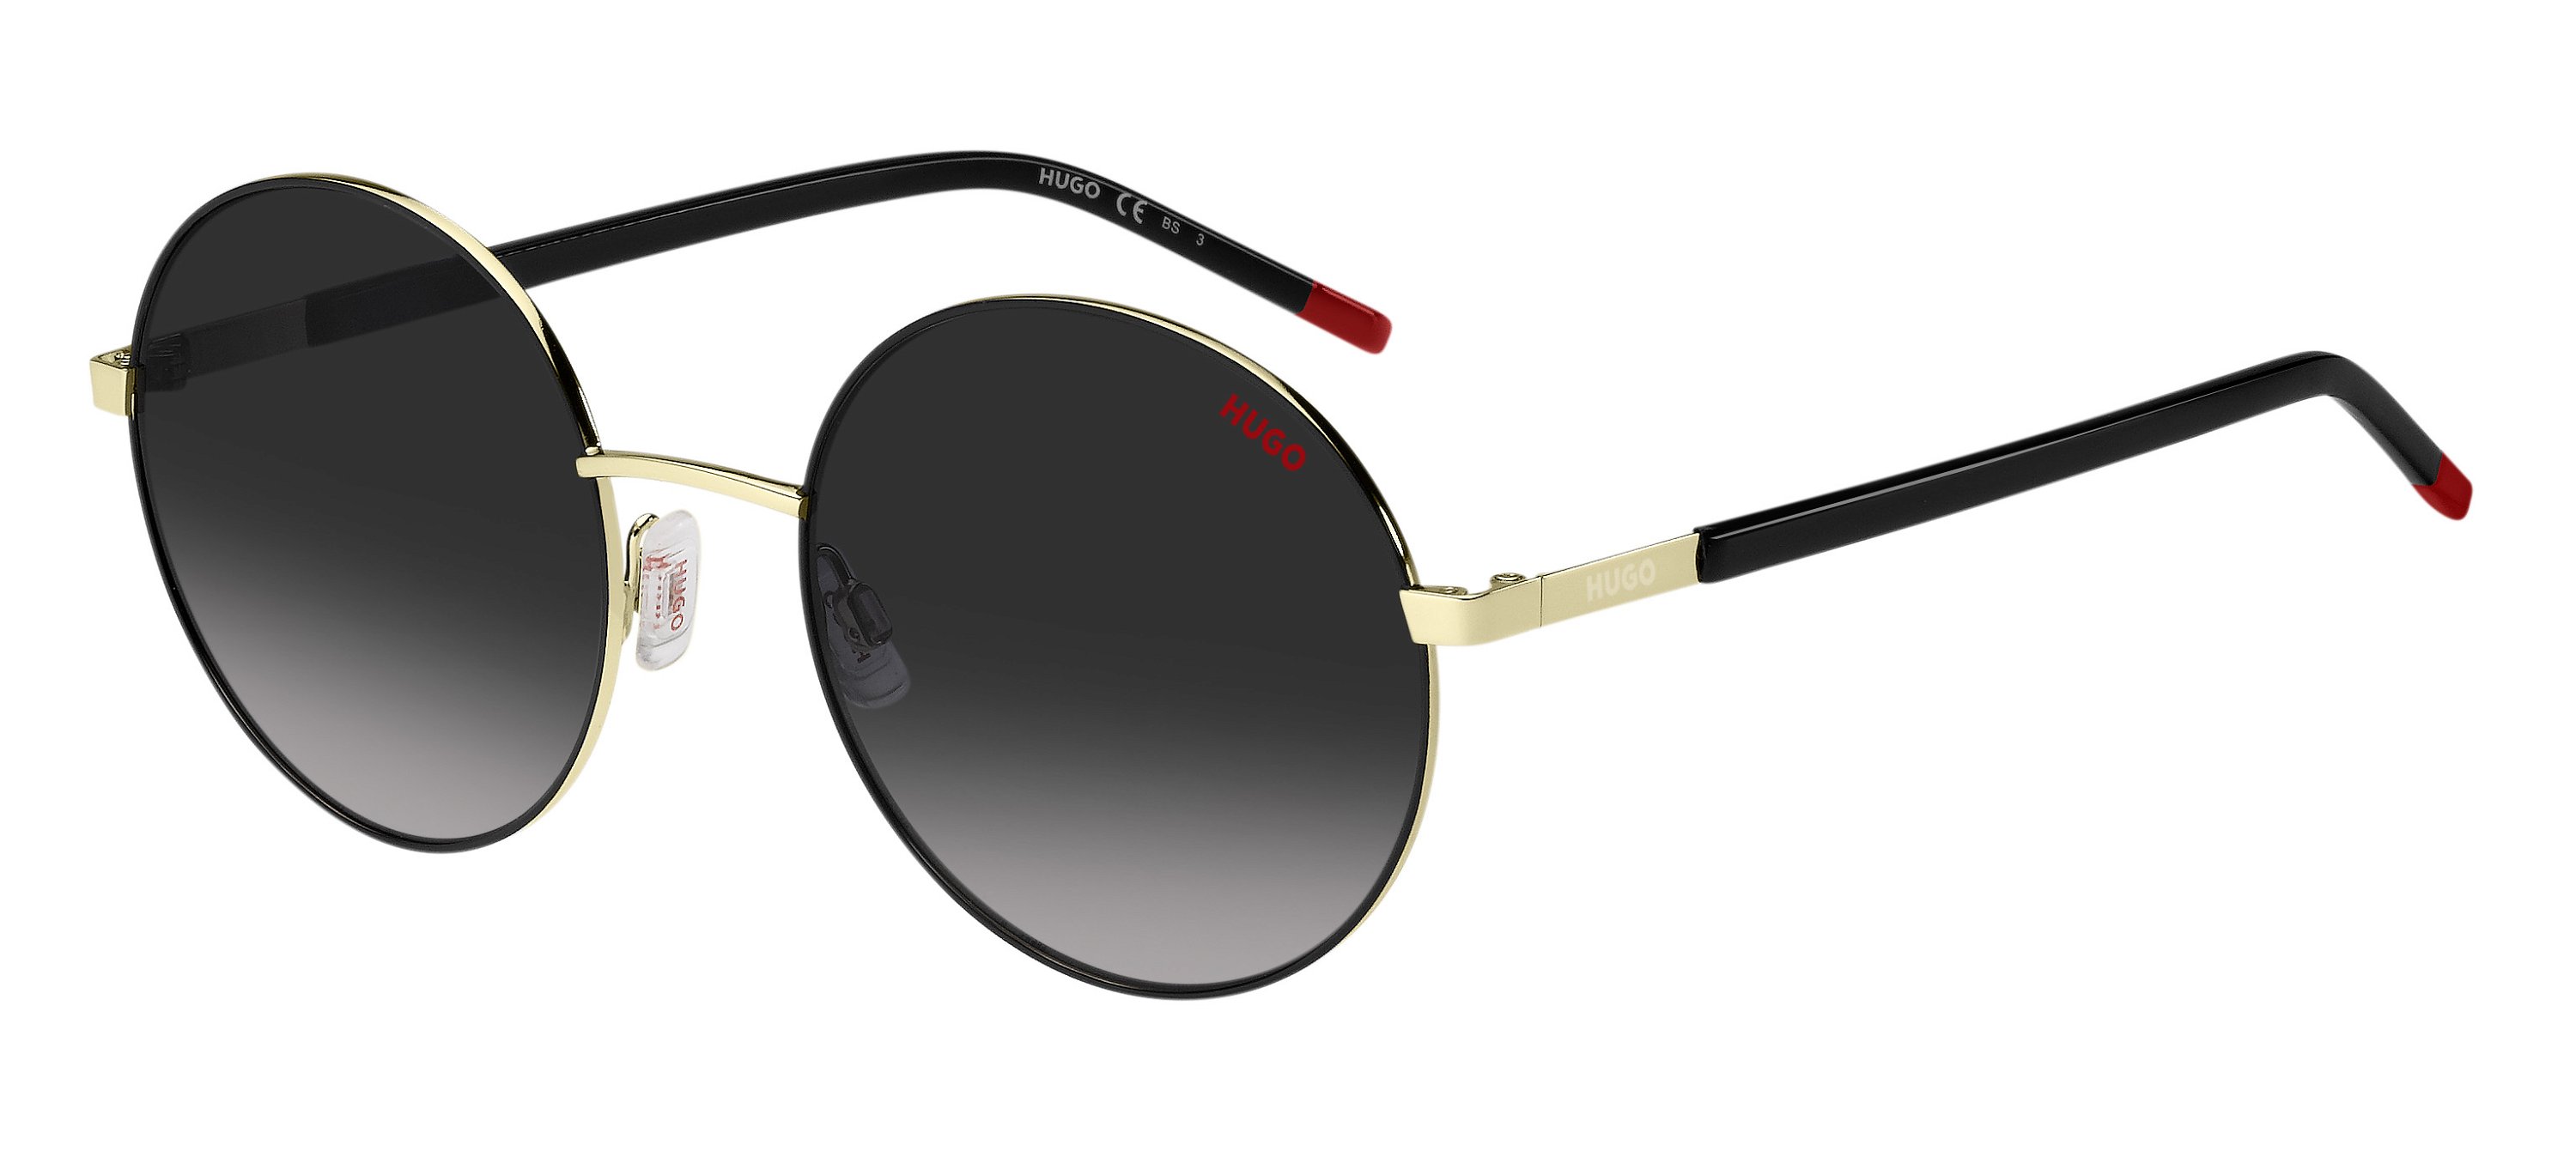 Das Bild zeigt die Sonnenbrille HG1237/S RHL von der Marke Hugo in gold/schwarz.